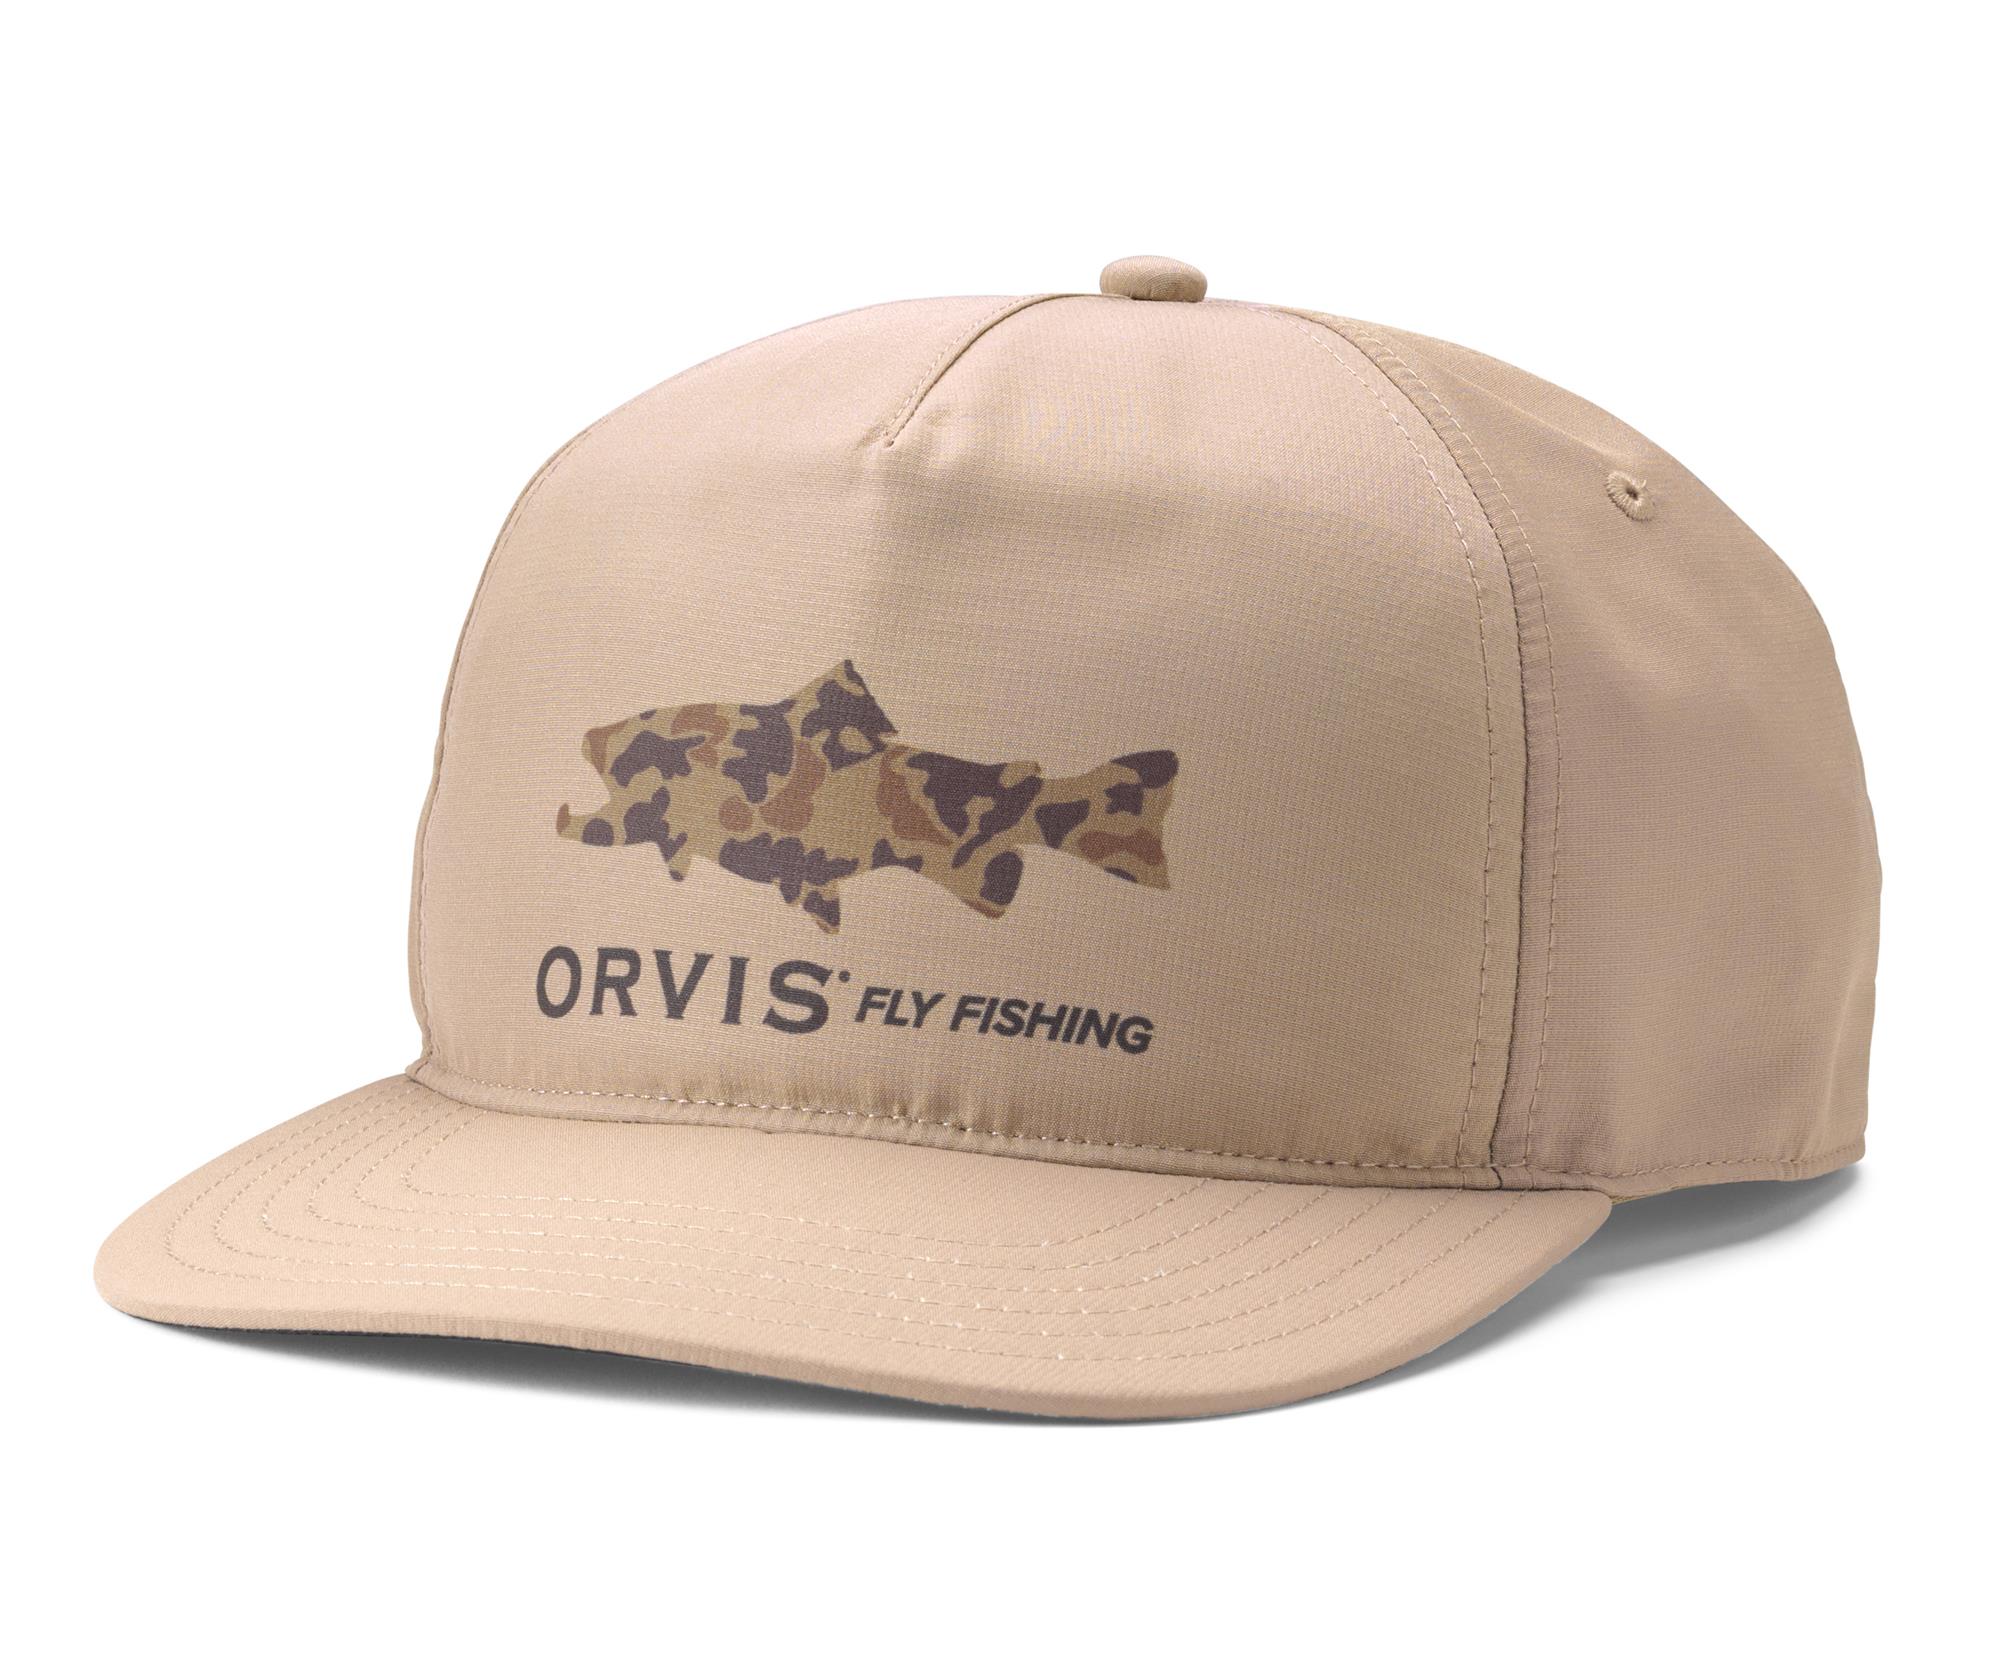 Orvis Fly Fishing Headwear For Sale